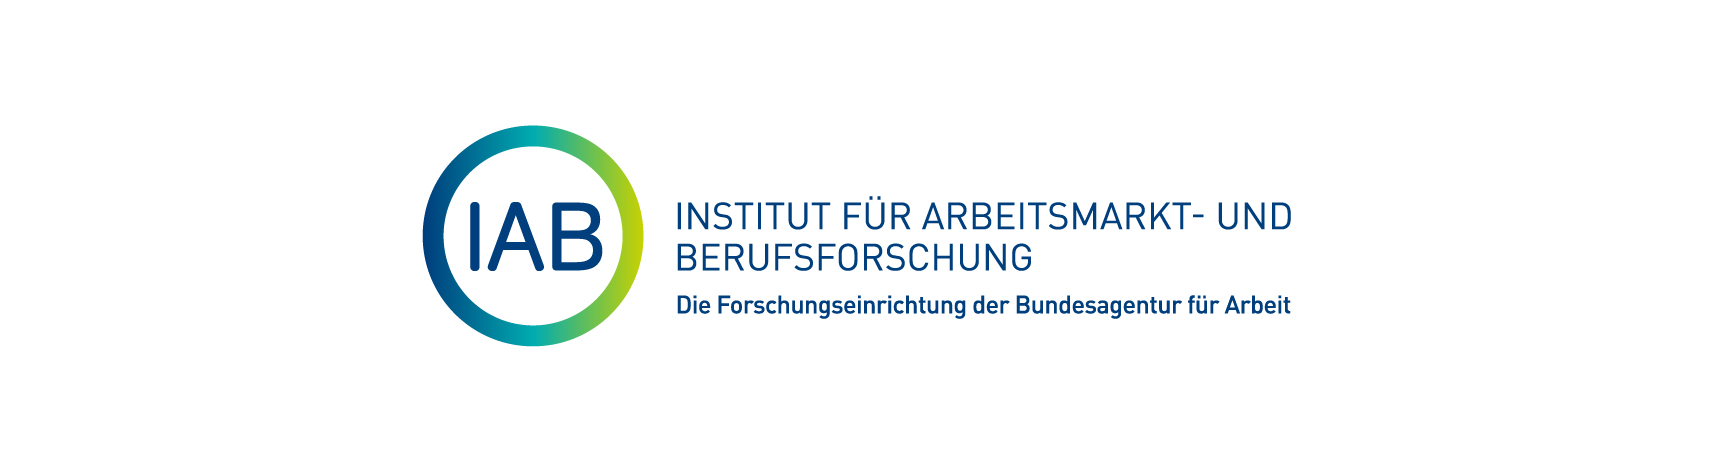 Logo: Institut für Arbeitsmarkt- und Berufsforschung der Bundesagentur für Arbeit (IAB)